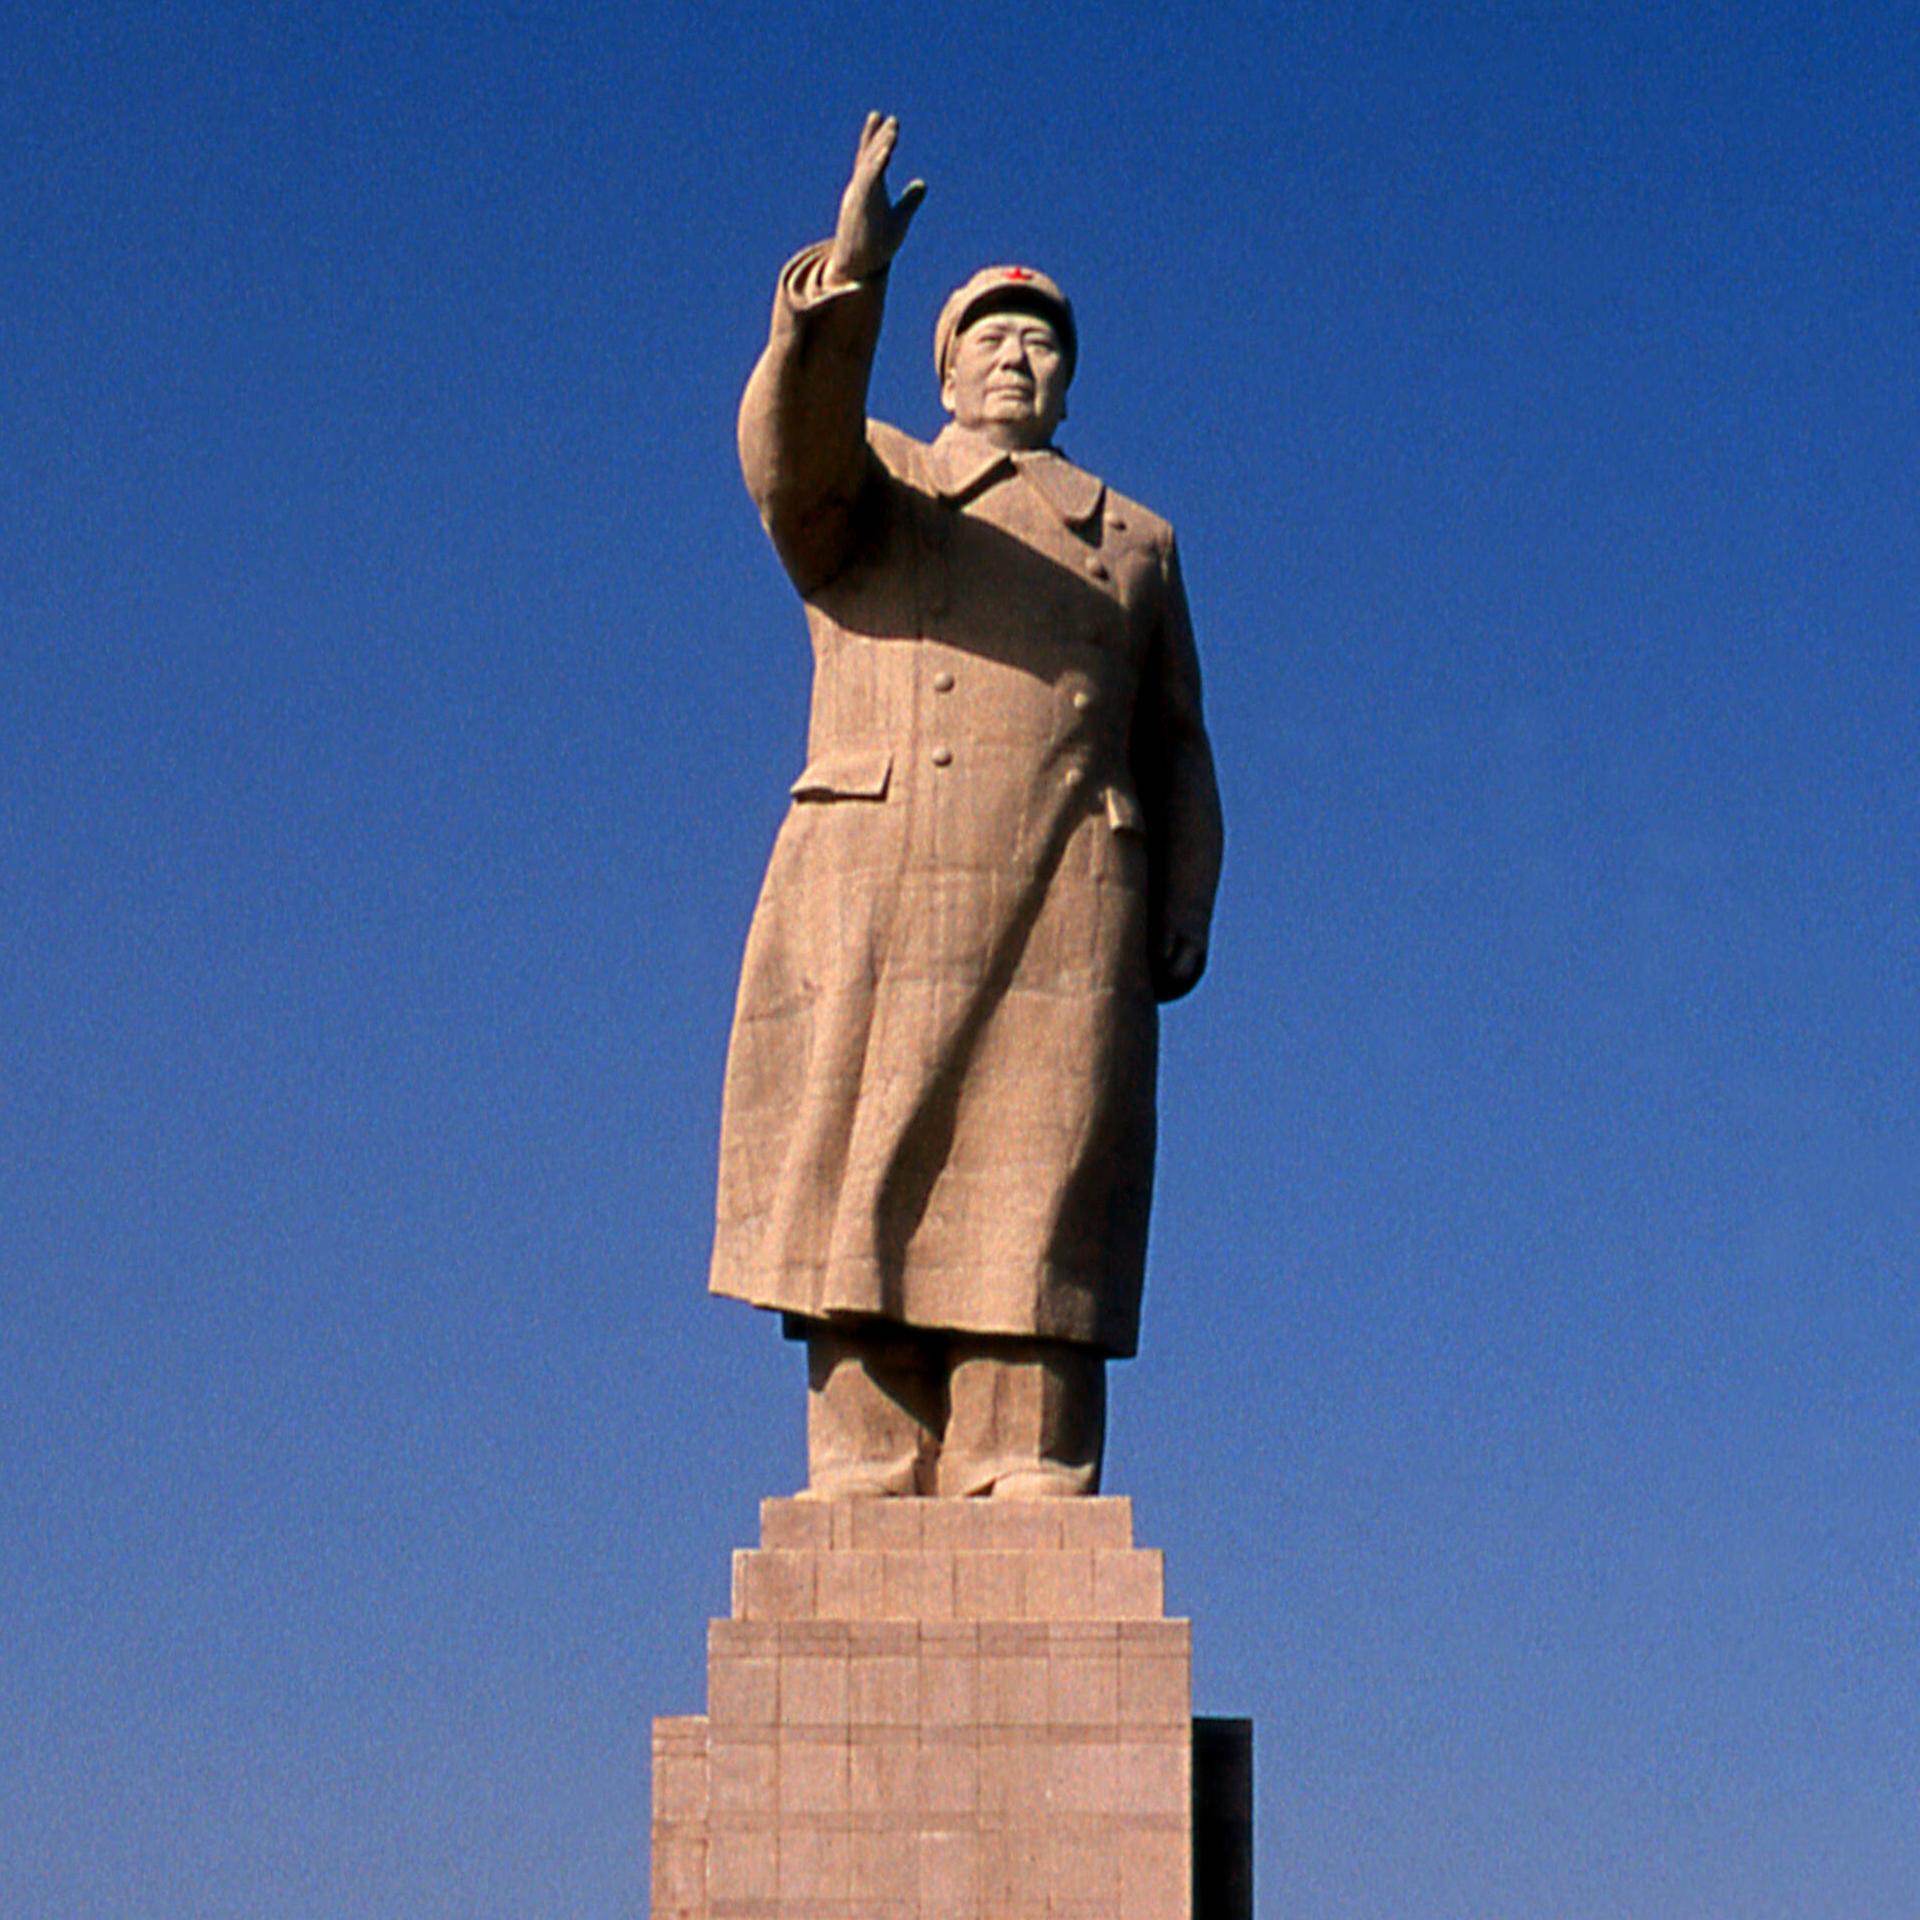 Maos Mangos – Chinesische Autorinnen und das Tabu der Politik